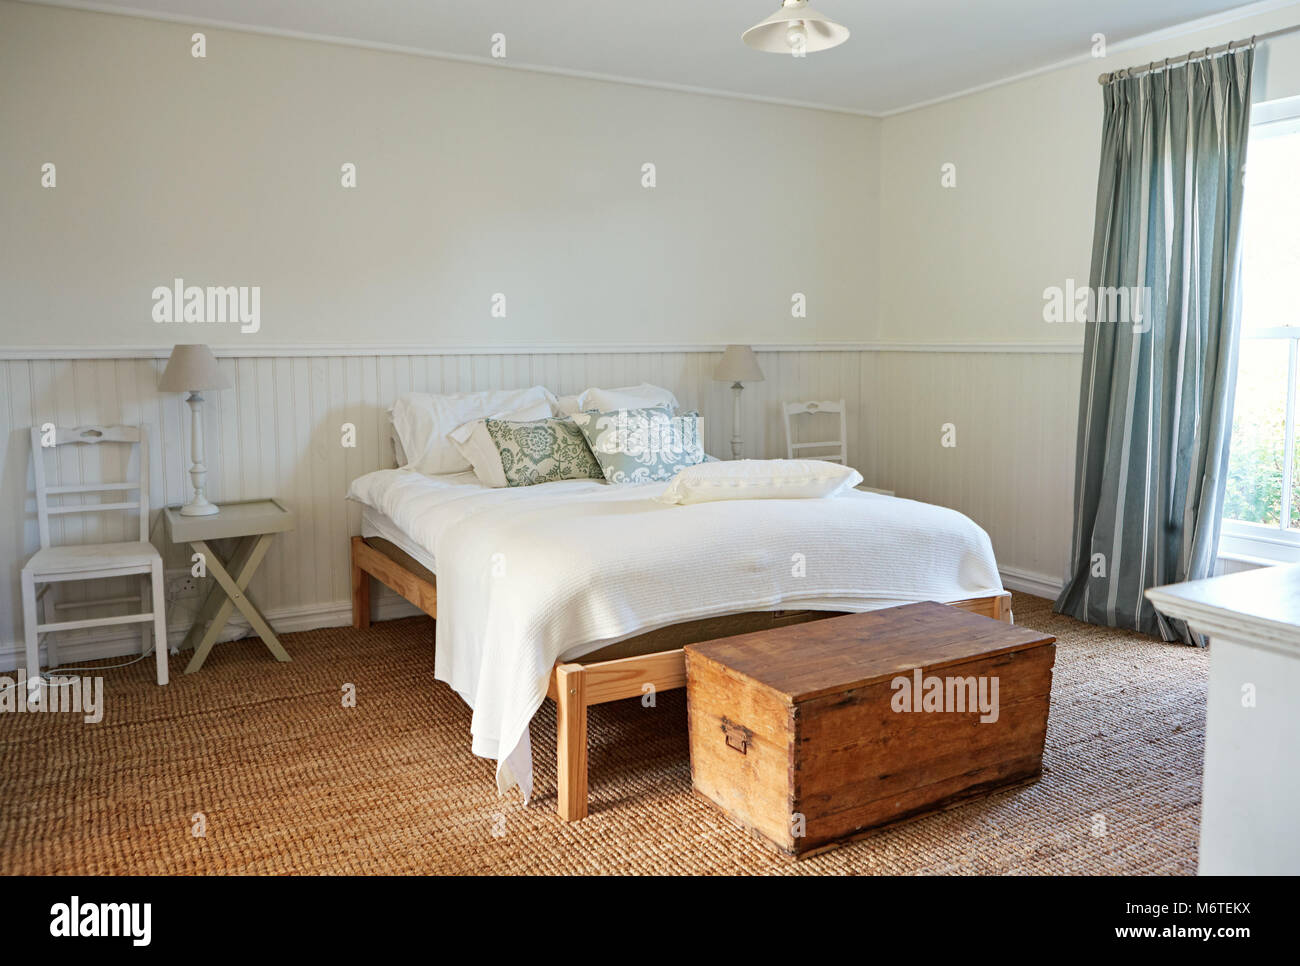 Innenraum von einem komfortablen Schlafzimmer im Landhausstil home Stockfoto